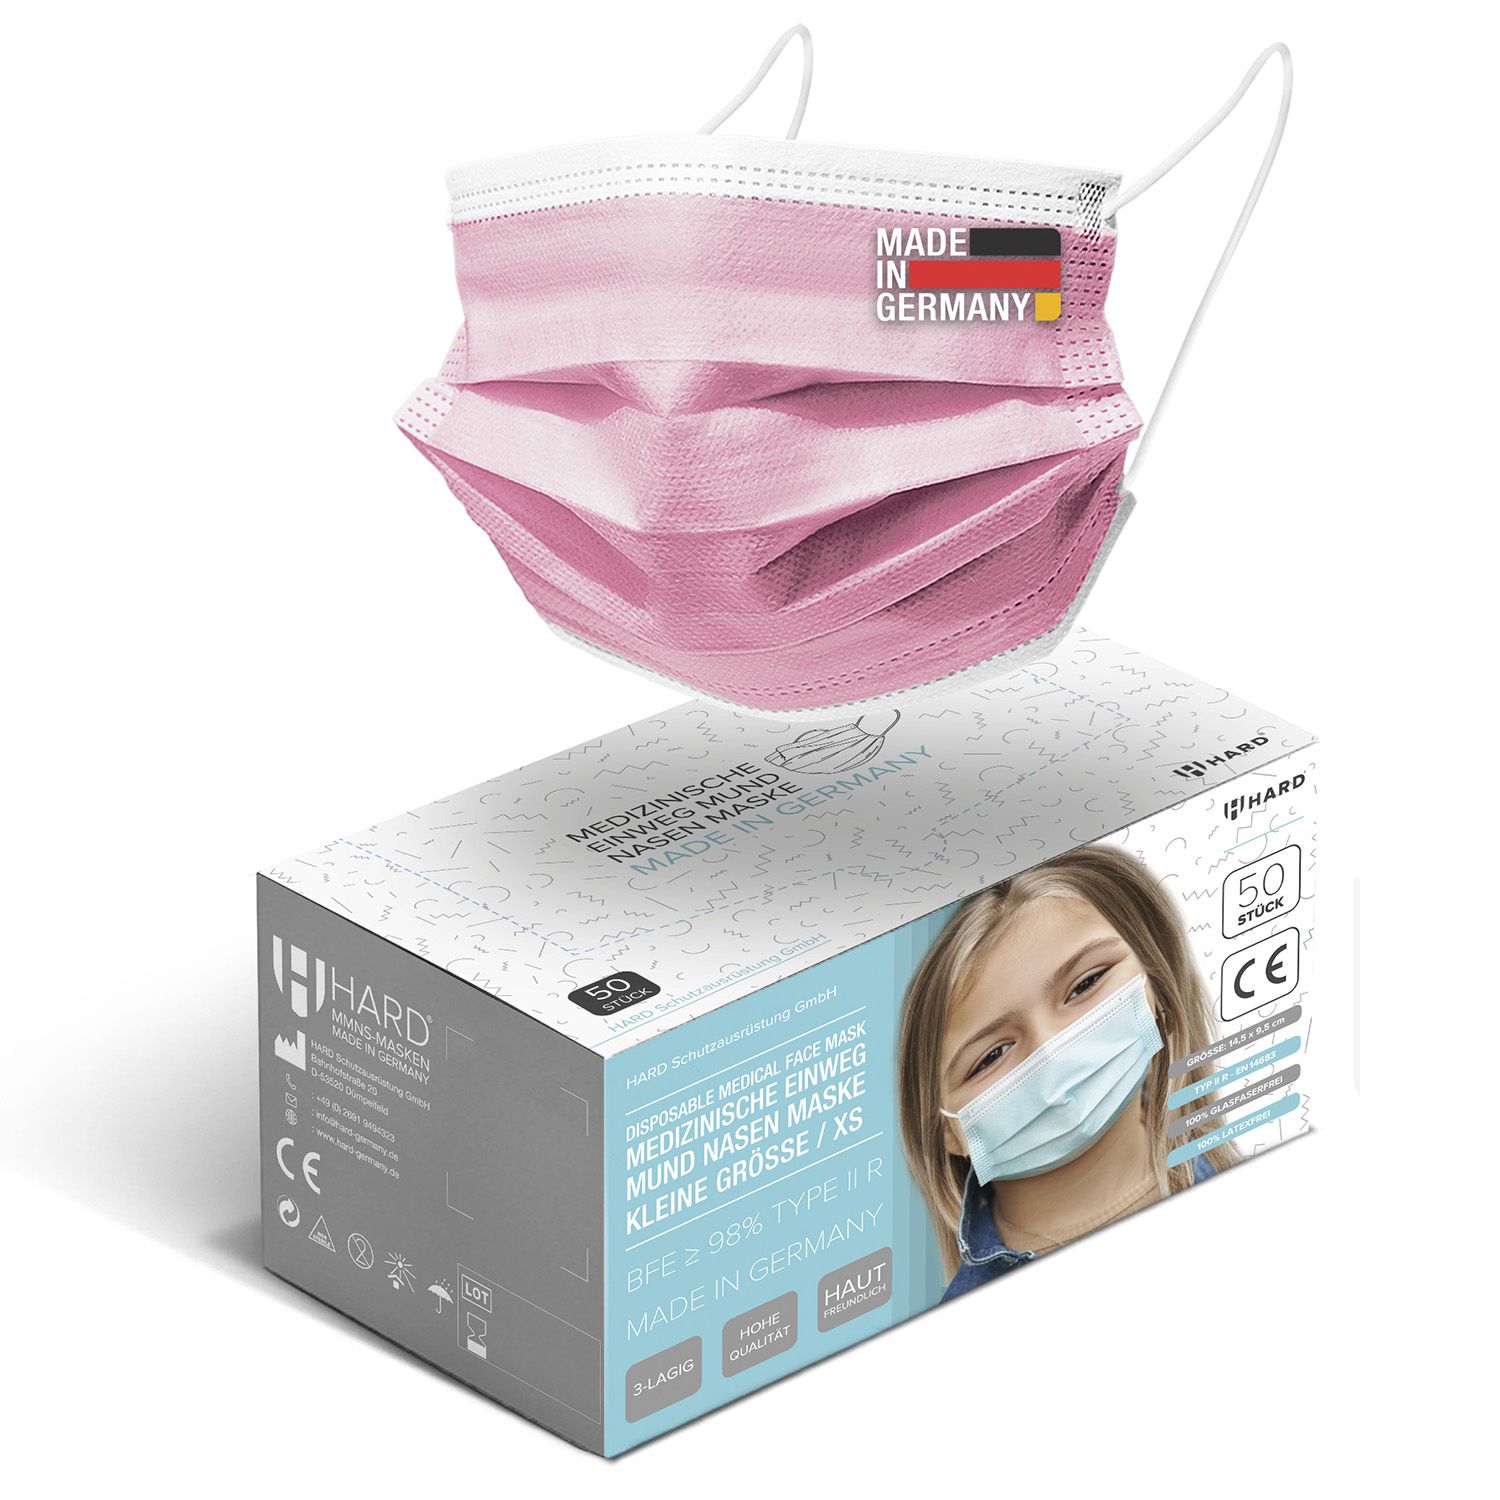 Medizinischer Mundschutz für Kinder Raspberry Pink